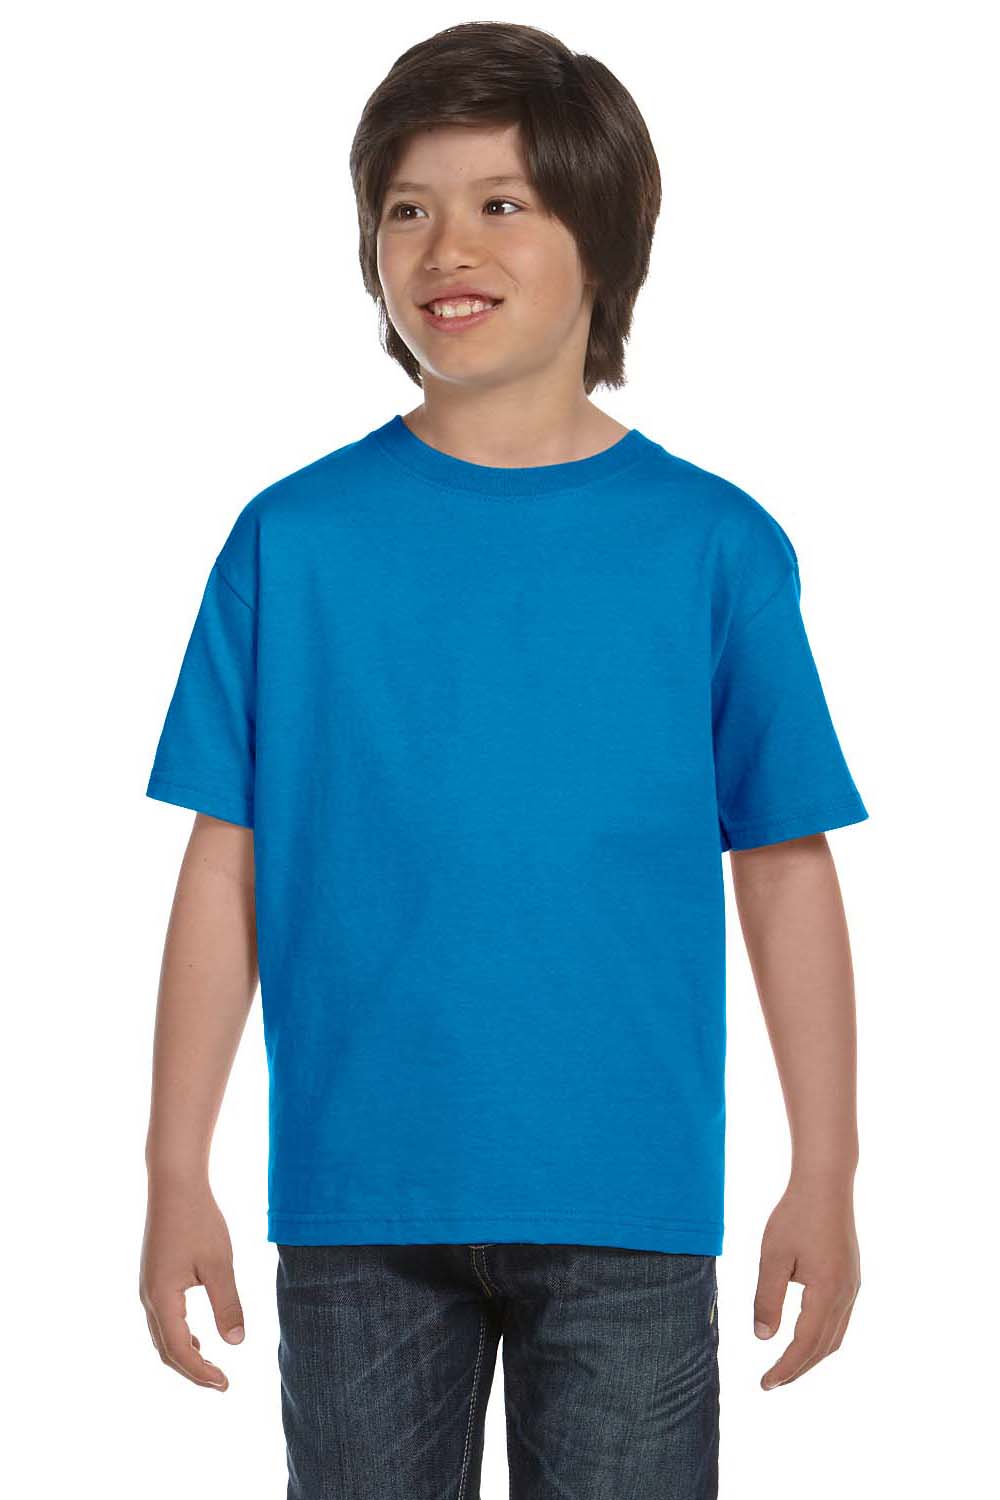 Gildan G800B Youth DryBlend Moisture Wicking Short Sleeve Crewneck T-Shirt Sapphire Blue Front